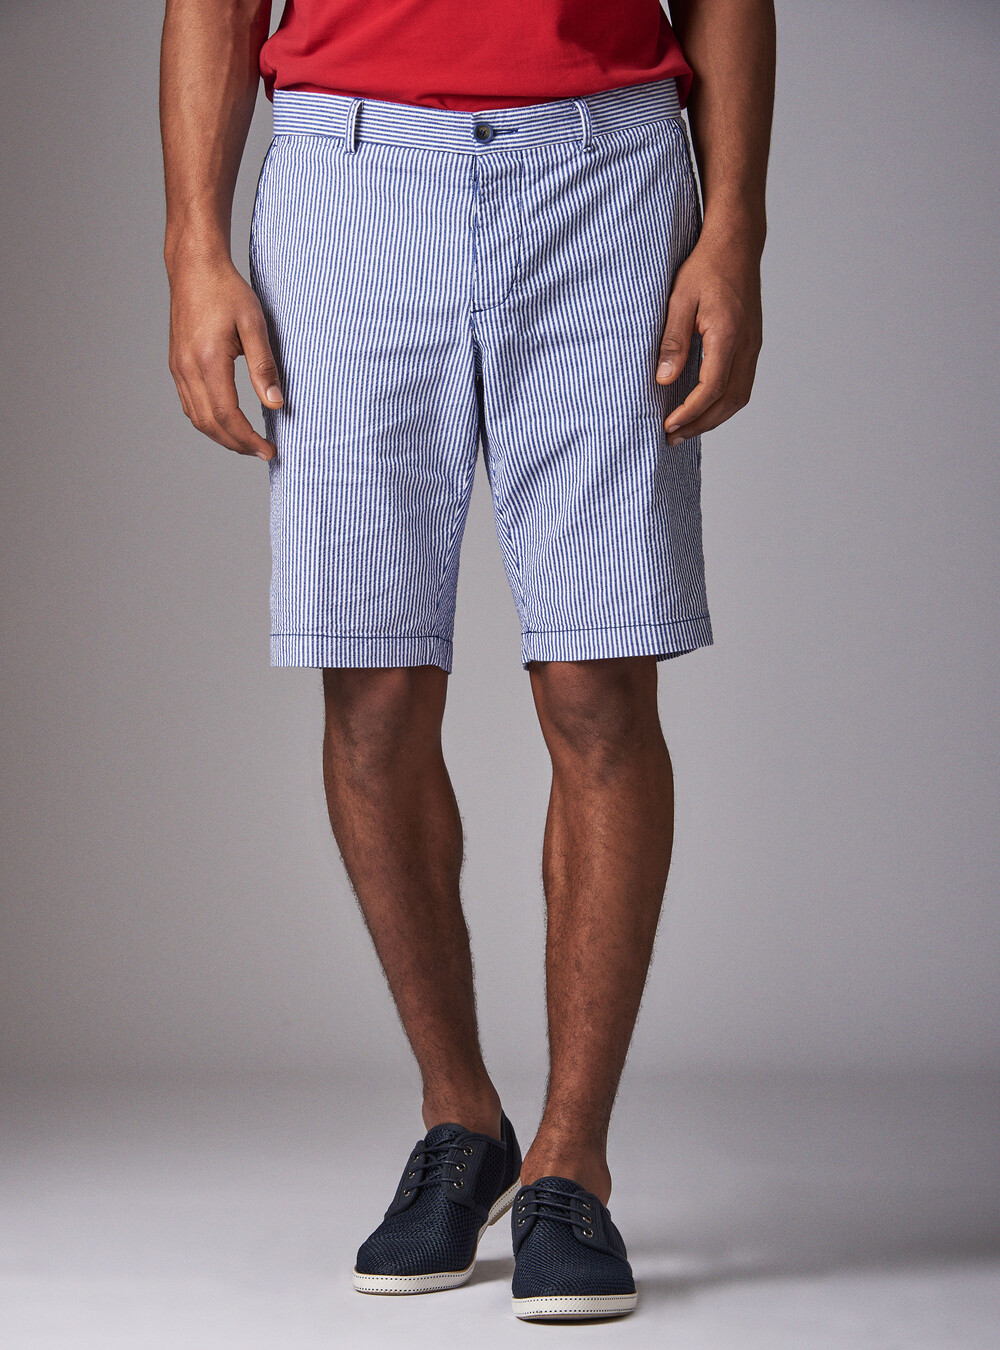 Bermudas pantalones cortos a rayas.